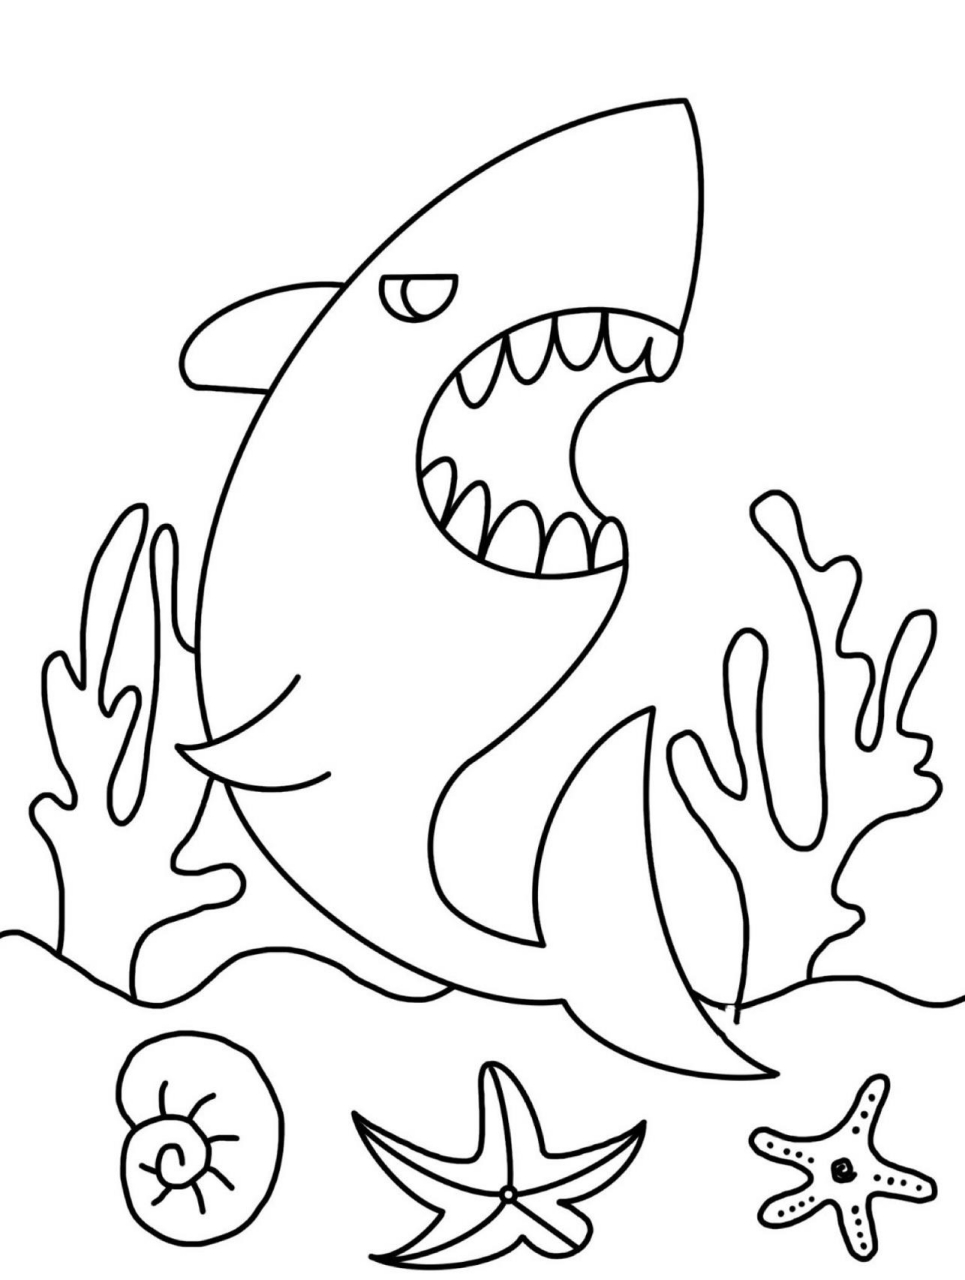 大鲨鱼简笔画可怕图片